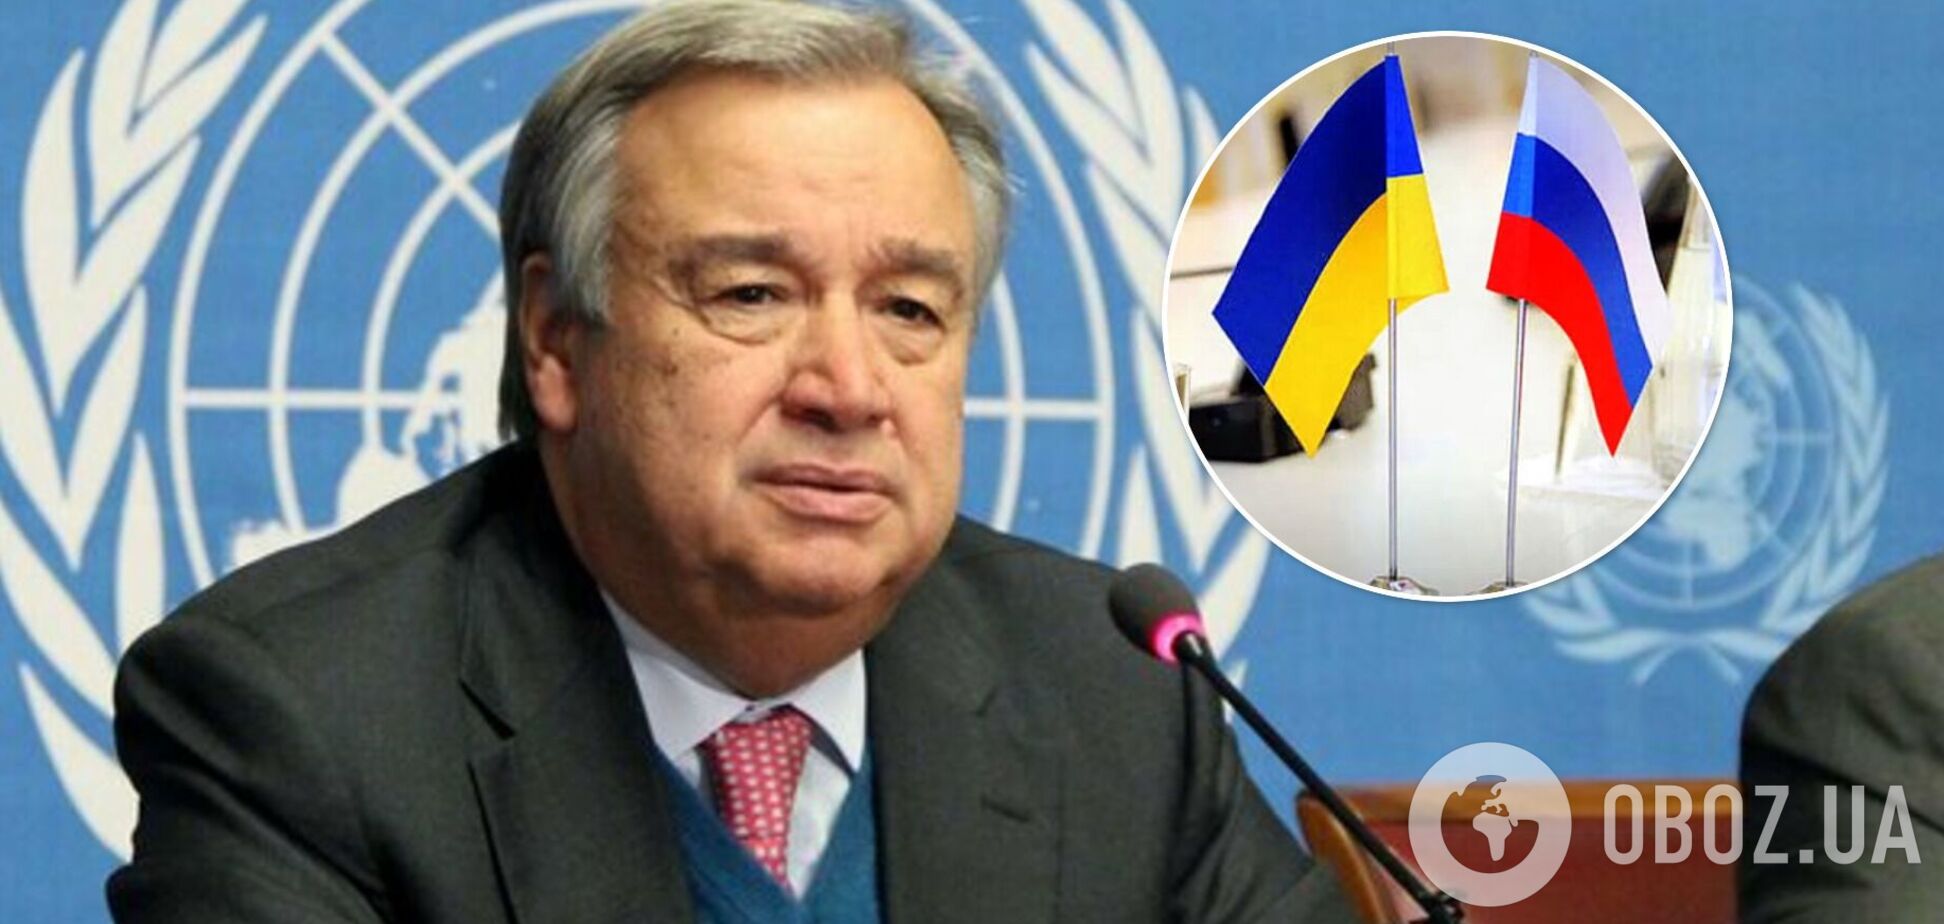 Генсек ООН предложил объявить в Украине 'пасхальное перемирие' и назвал даты